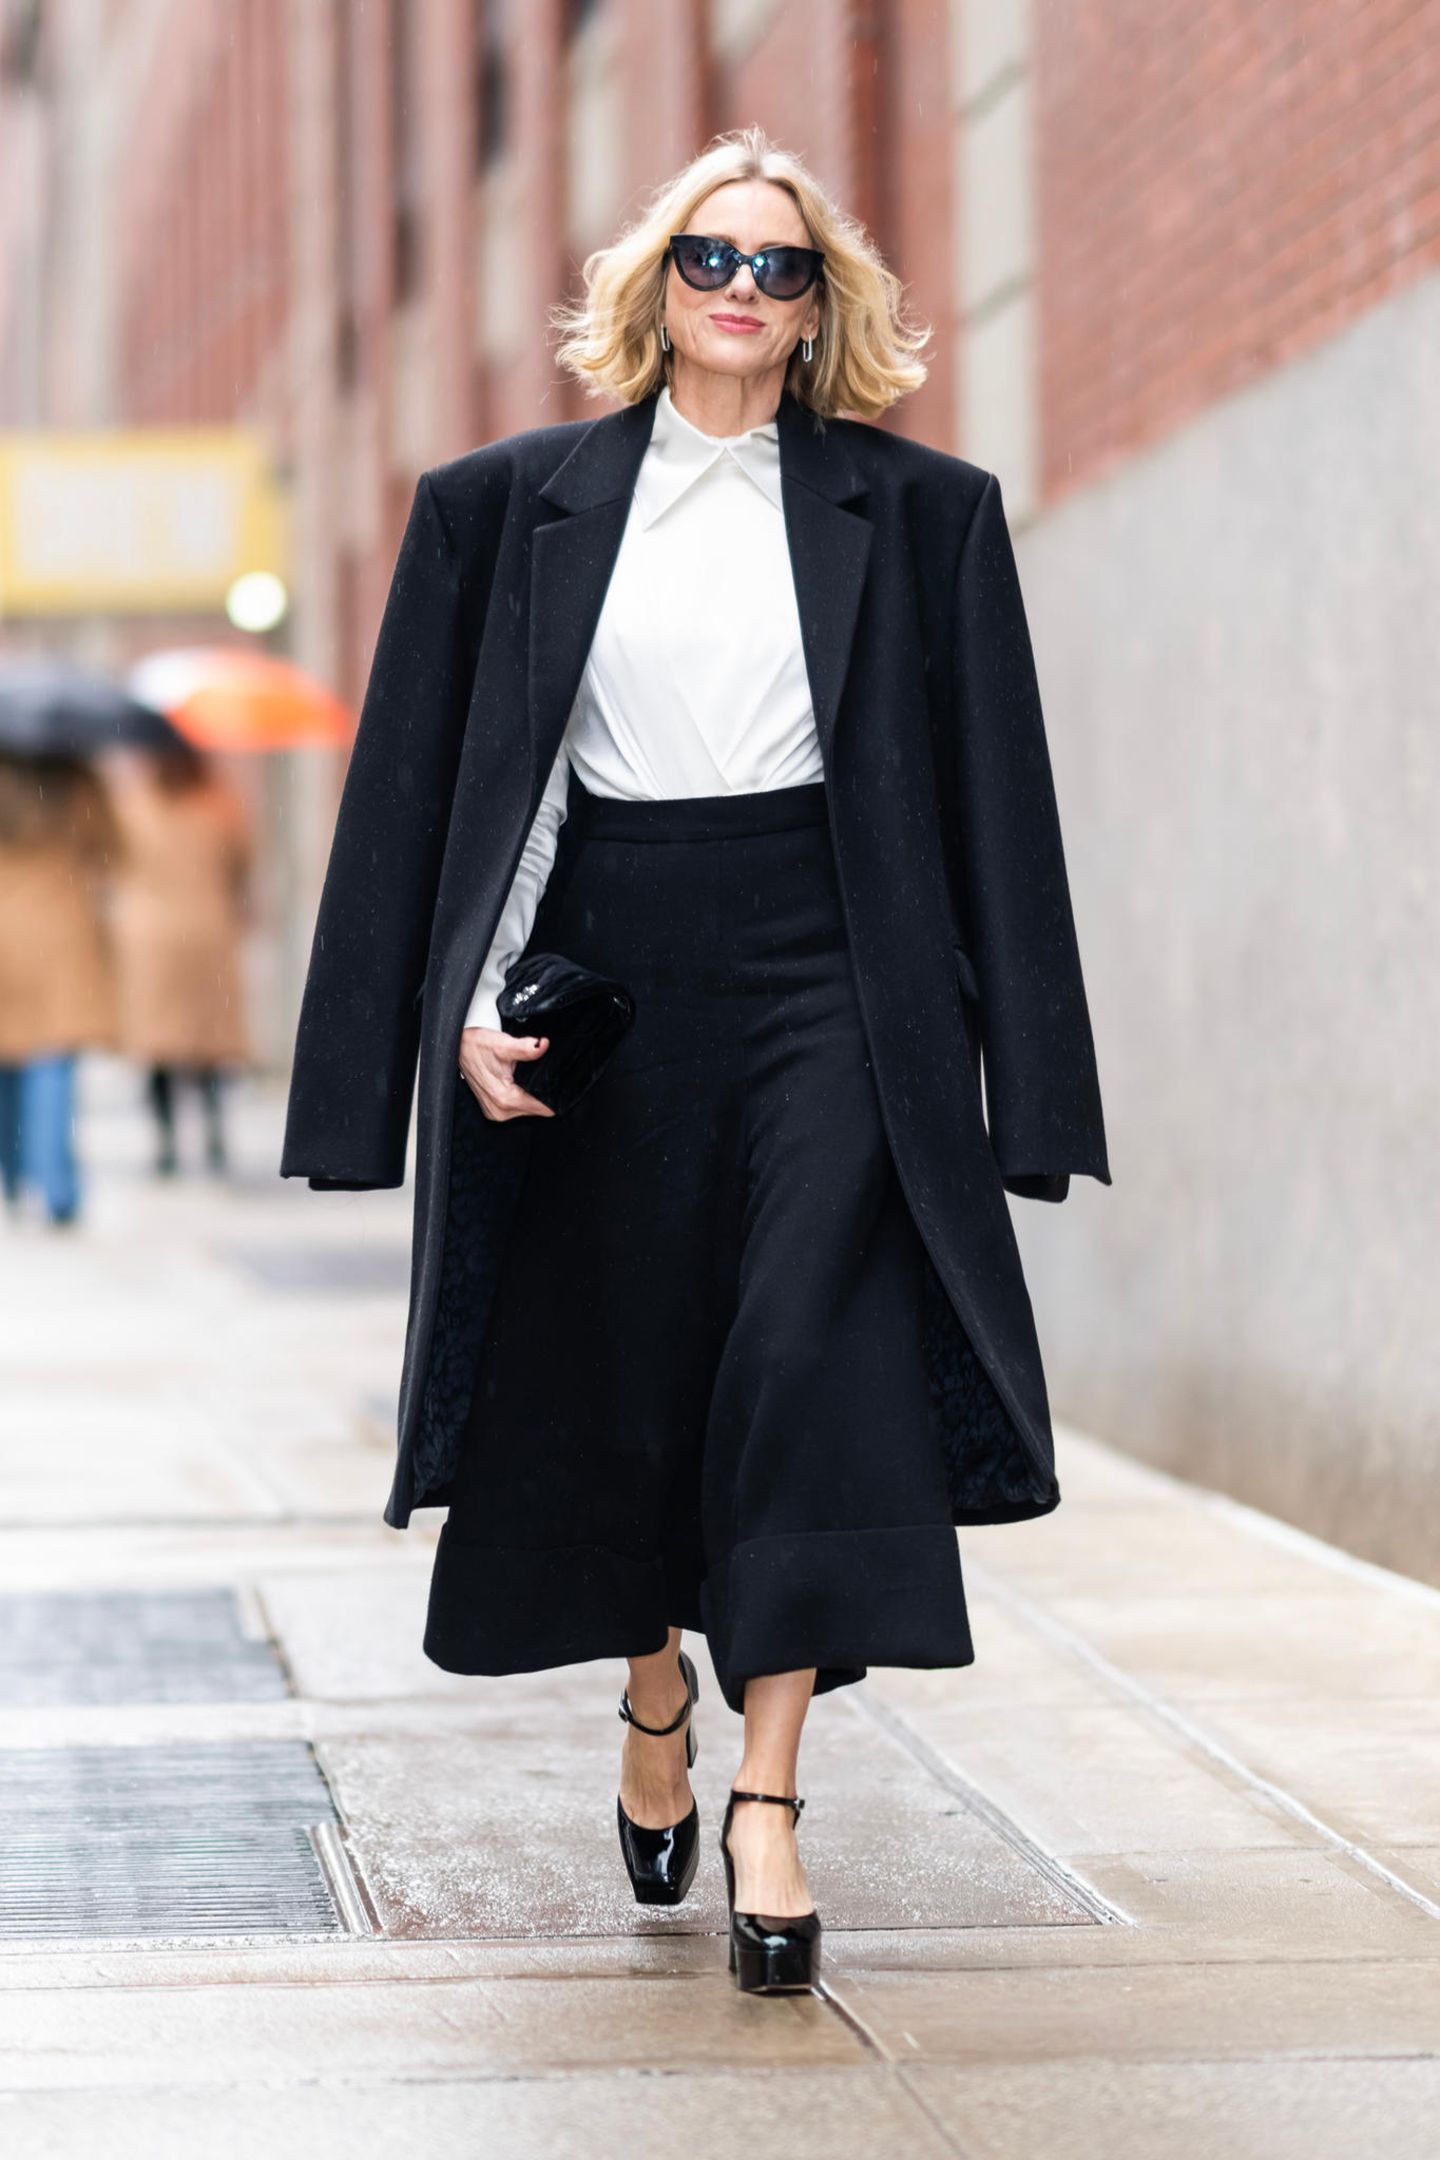 Pure Eleganz! In diesem klassischen Schwarz-Weiß-Look stolziert Schauspielerin Naomi Watts durch die Straßen von New York. Sie trägt eine schwarze Culotte-Hose, eine weiße Bluse und glänzende Plateau-Pumps. Stilbewusst wirft sie ihren schwarzen Mantel über ihre Schultern und rundet ihr Outfit mit einer großen Sonnenbrille sowie silbernen Ohrringen ab. Klassisch, elegant und ultra cool: Naomi trägt den Go-To-Look fürs Büro.